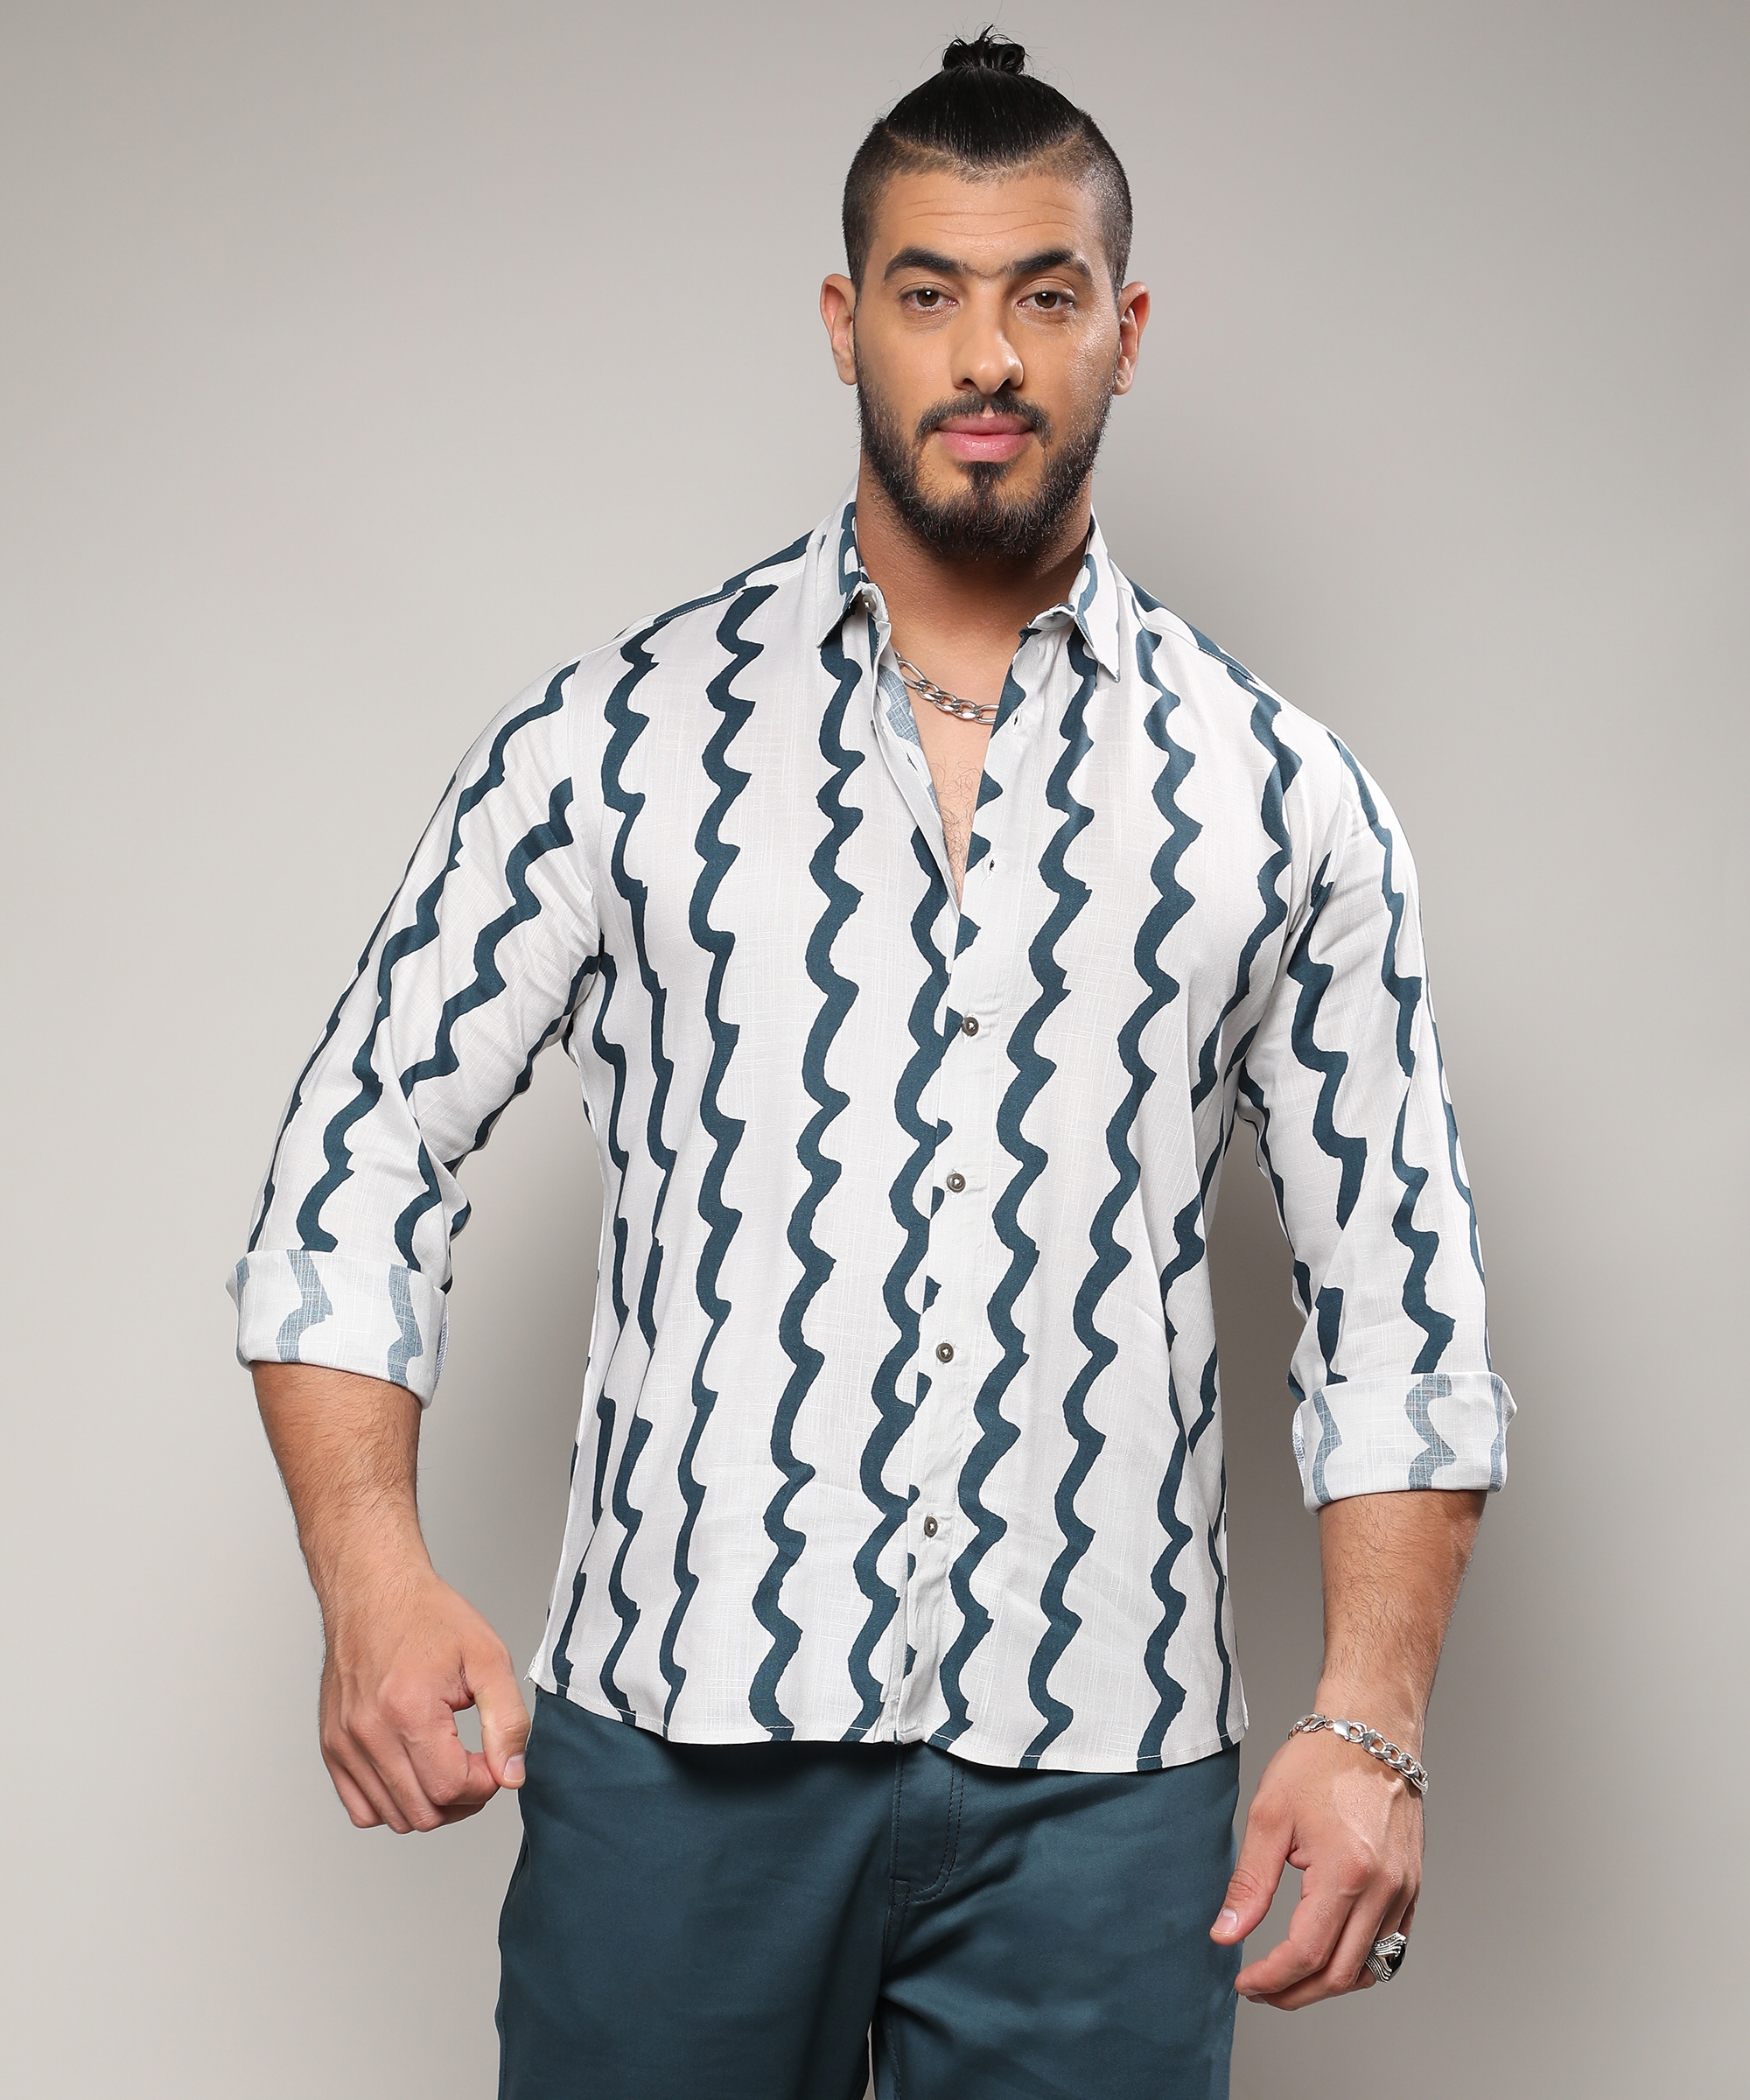 Instafab Plus | Men's White & Navy Blue Contrast Paint Lines Shirt